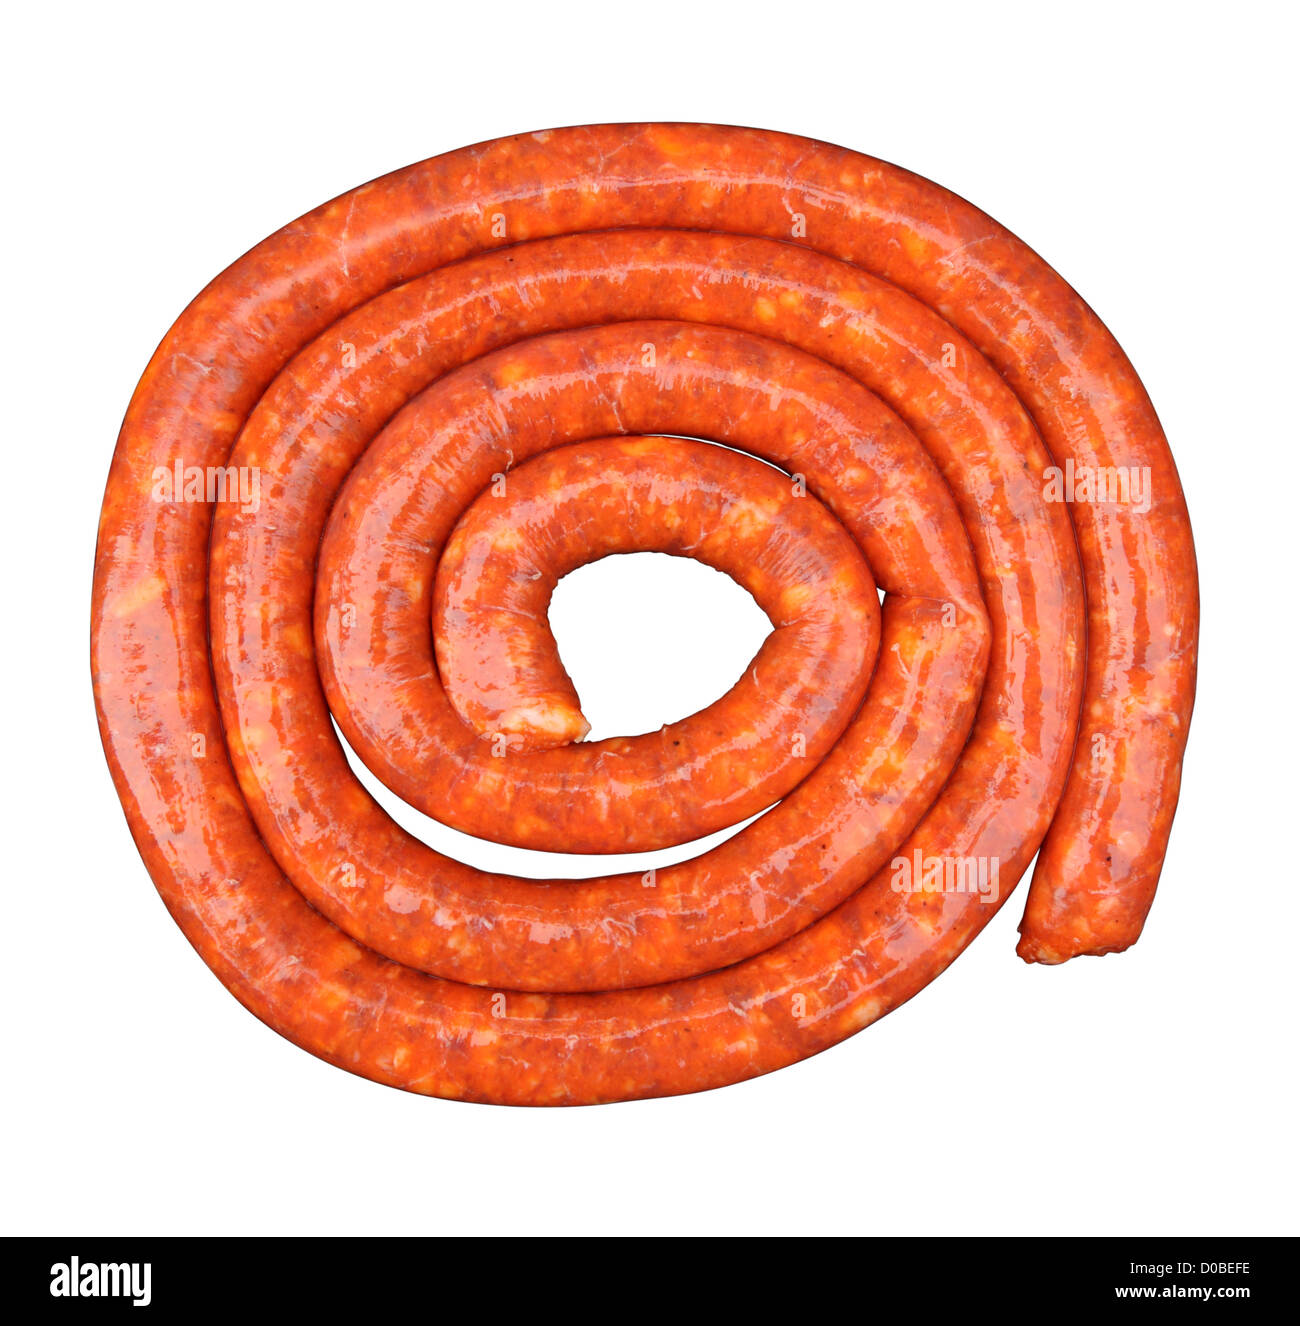 Spanish chorizo sausage isolated over white background Stock Photo